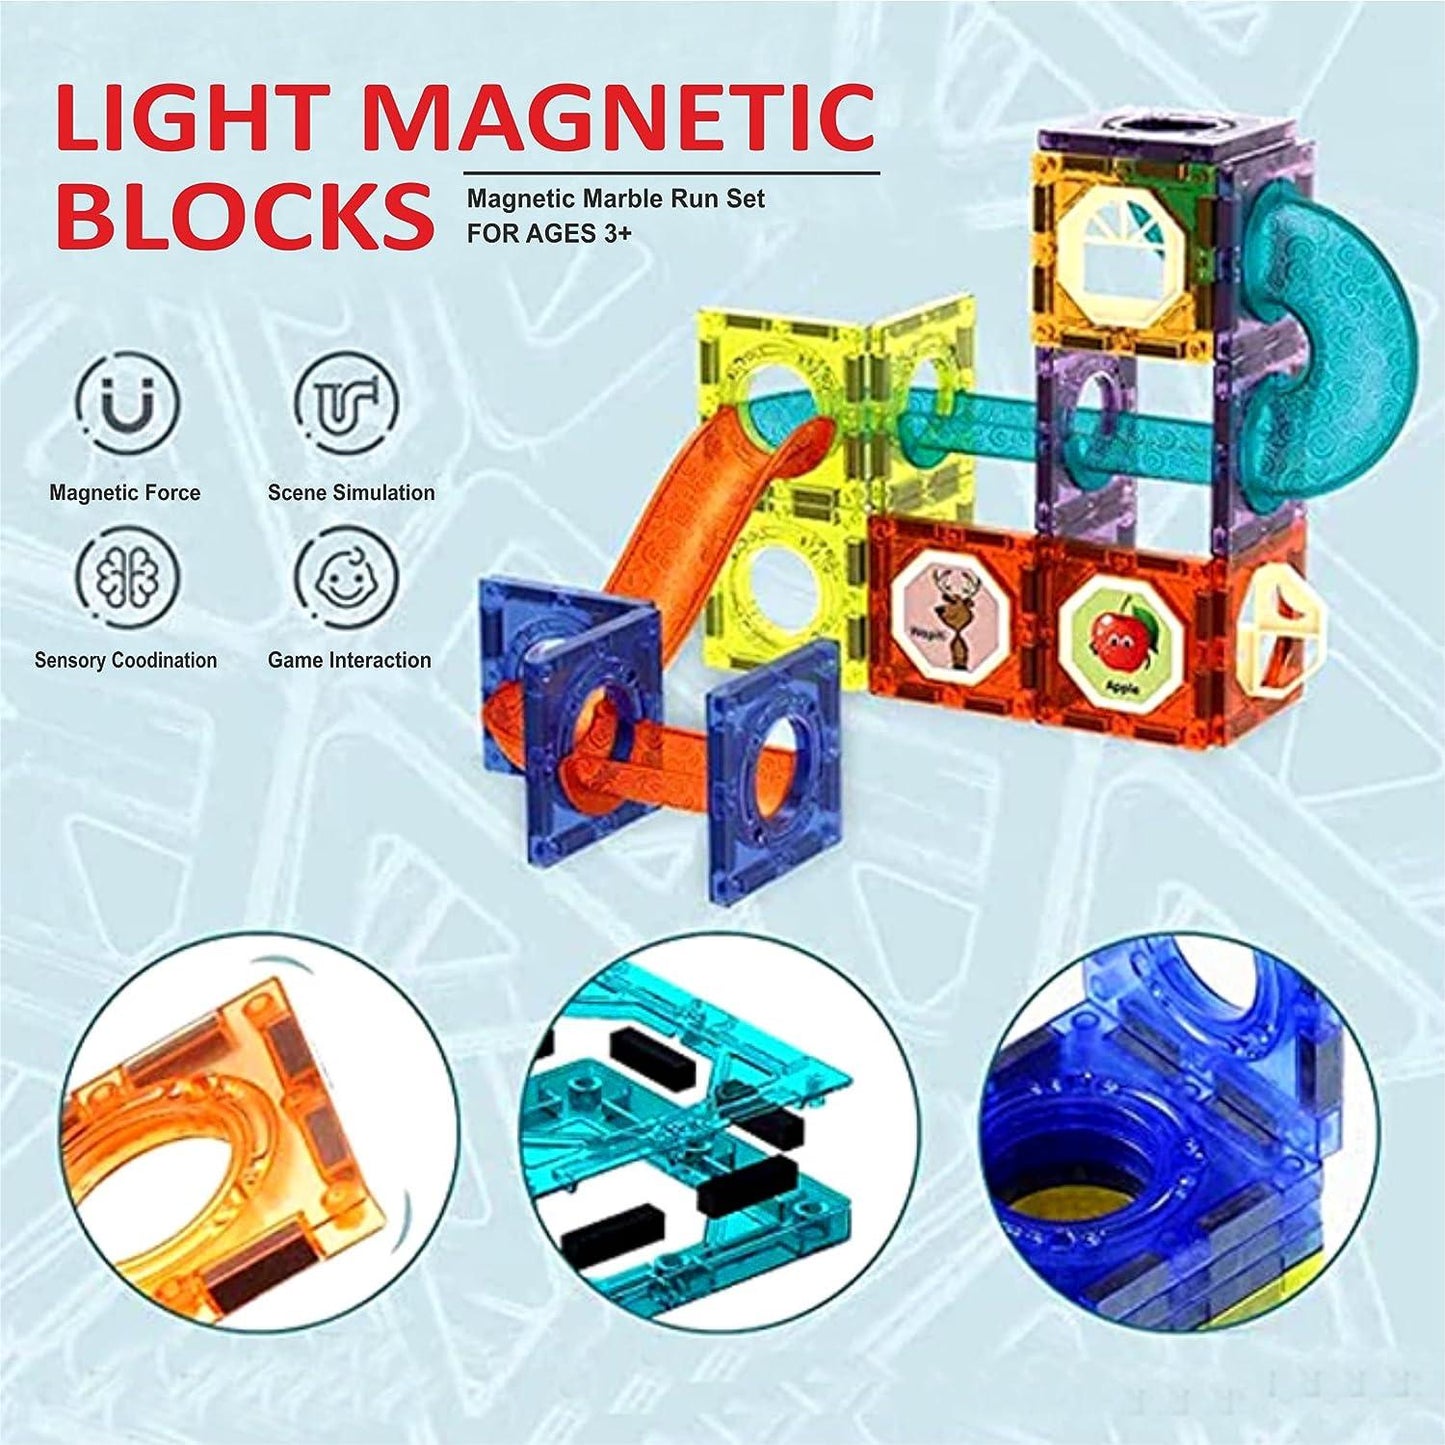 STEM Light Magnetic Blocks 49pcs Learning Toy For Kids